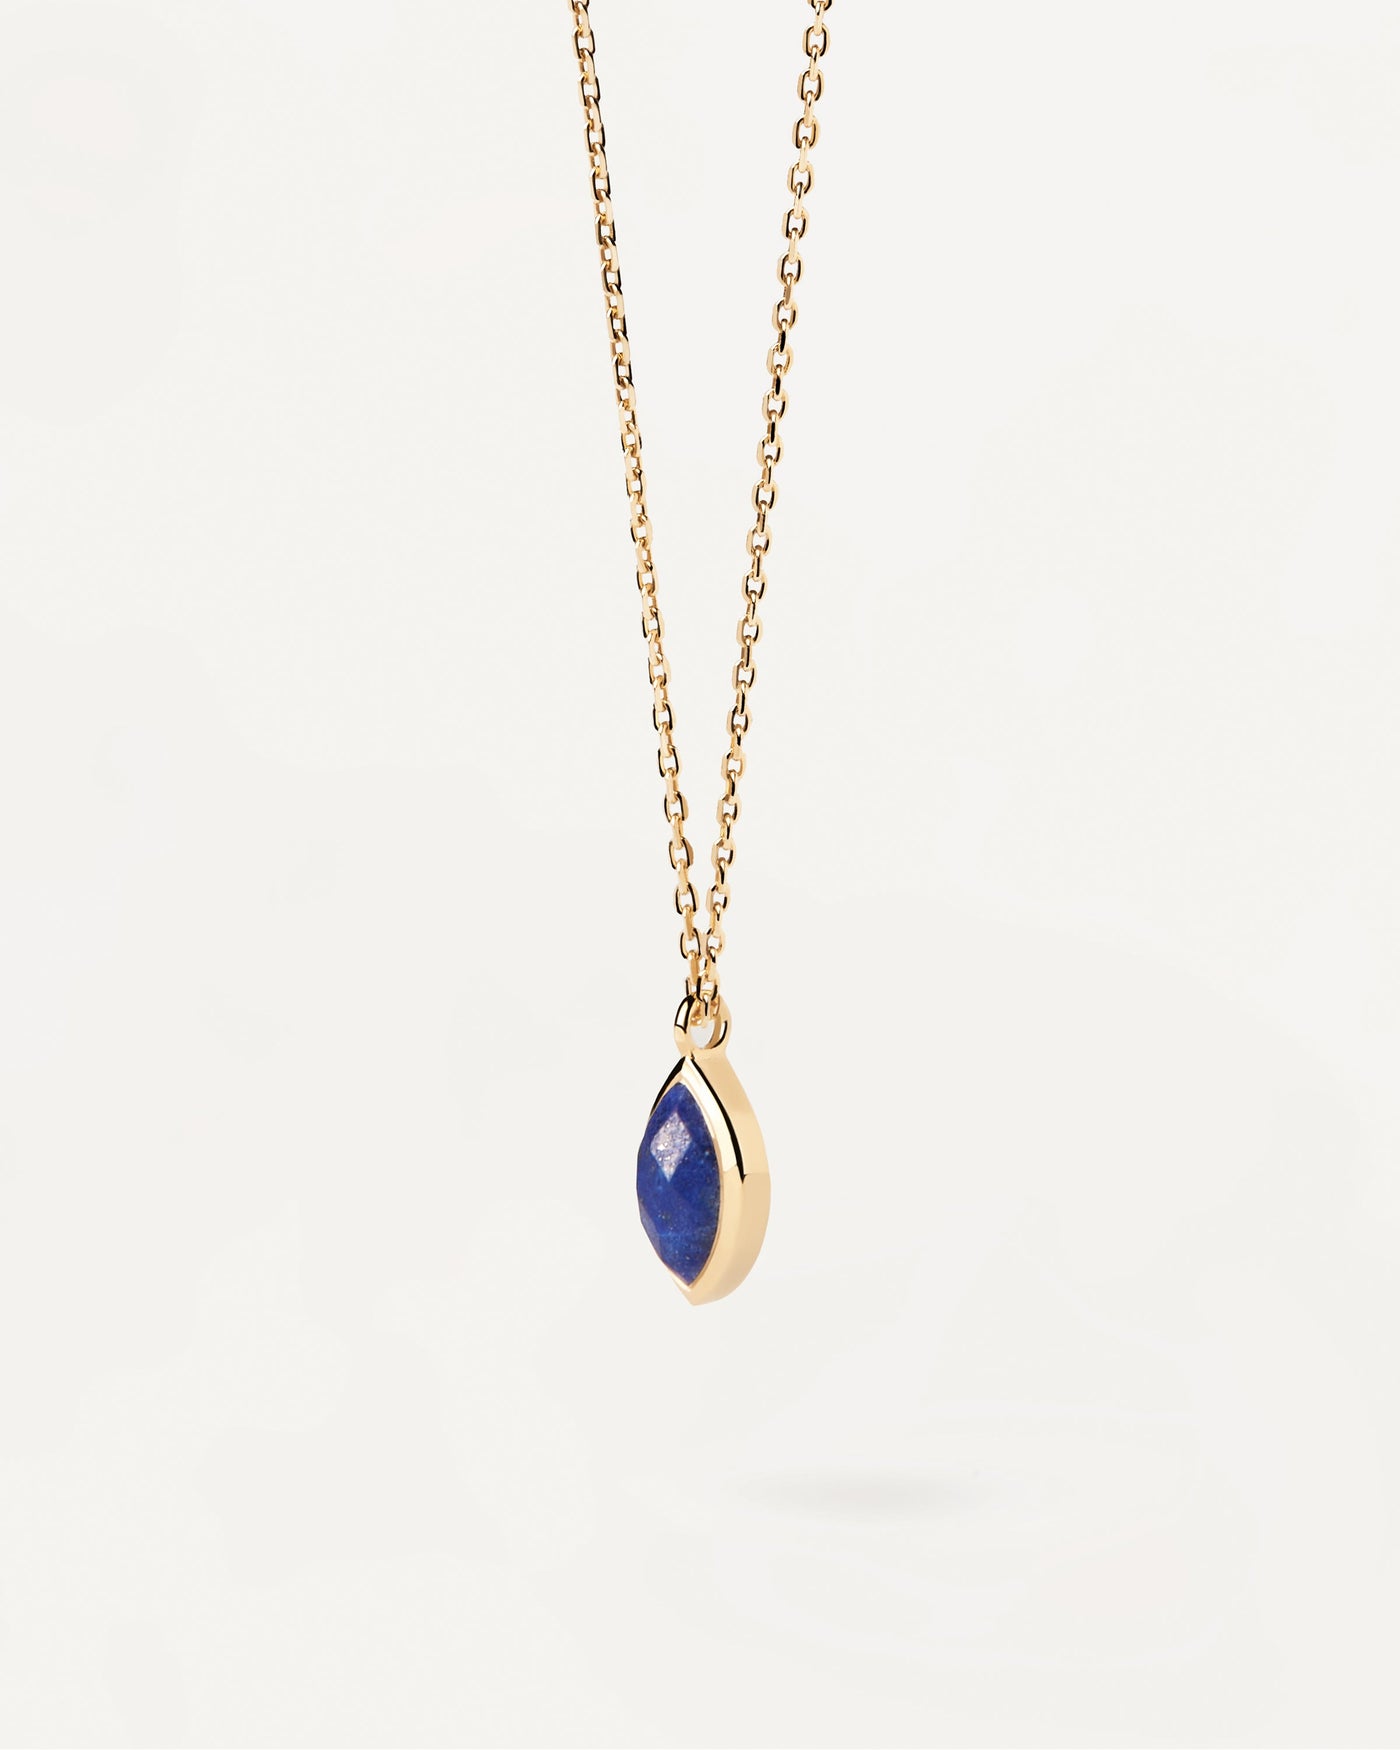 Sélection 2023 | Collier  Lapis-Lazuli Nomad. Collier chaîne plaquée or avec un pendentif en pierre fine bleue taillée en marquise. Découvrez les dernières nouveautés de chez PDPAOLA. Commandez et recevez votre bijou en toute sérénité. Livraison gratuite.